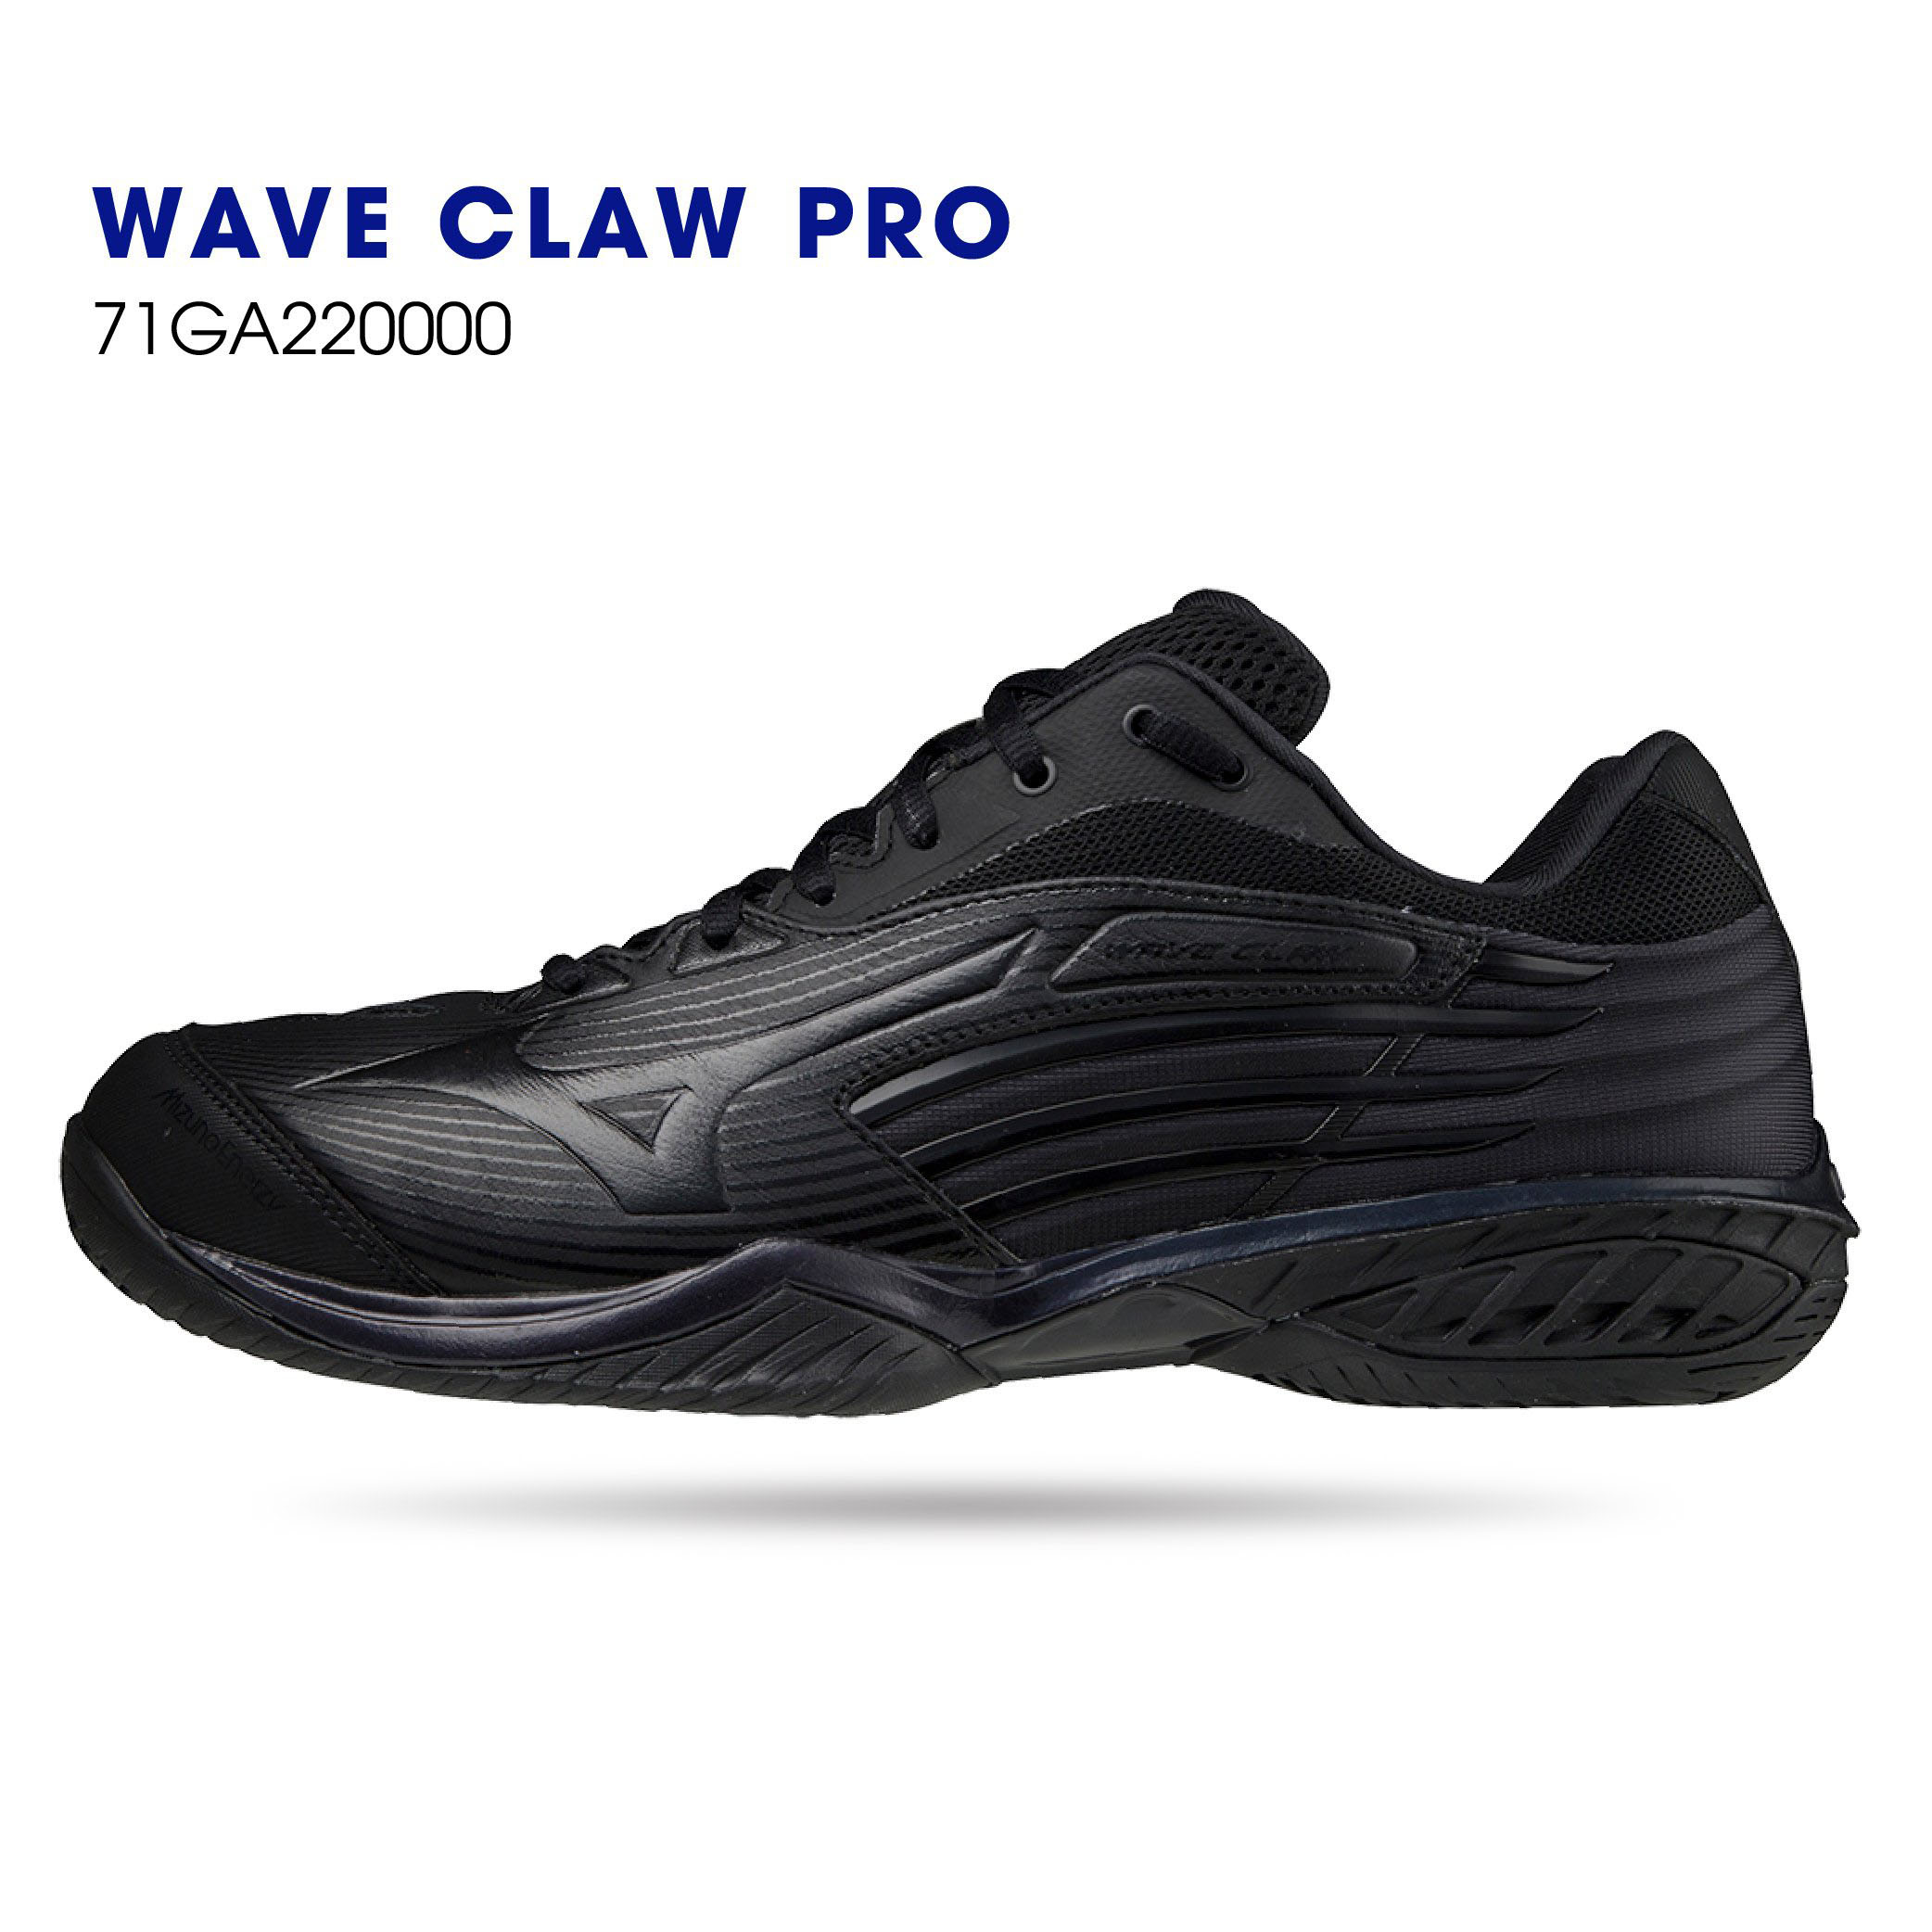 Giày cầu lông chính hãng Mizuno Wave Claw Pro 71GA220004 mẫu mới màu đen